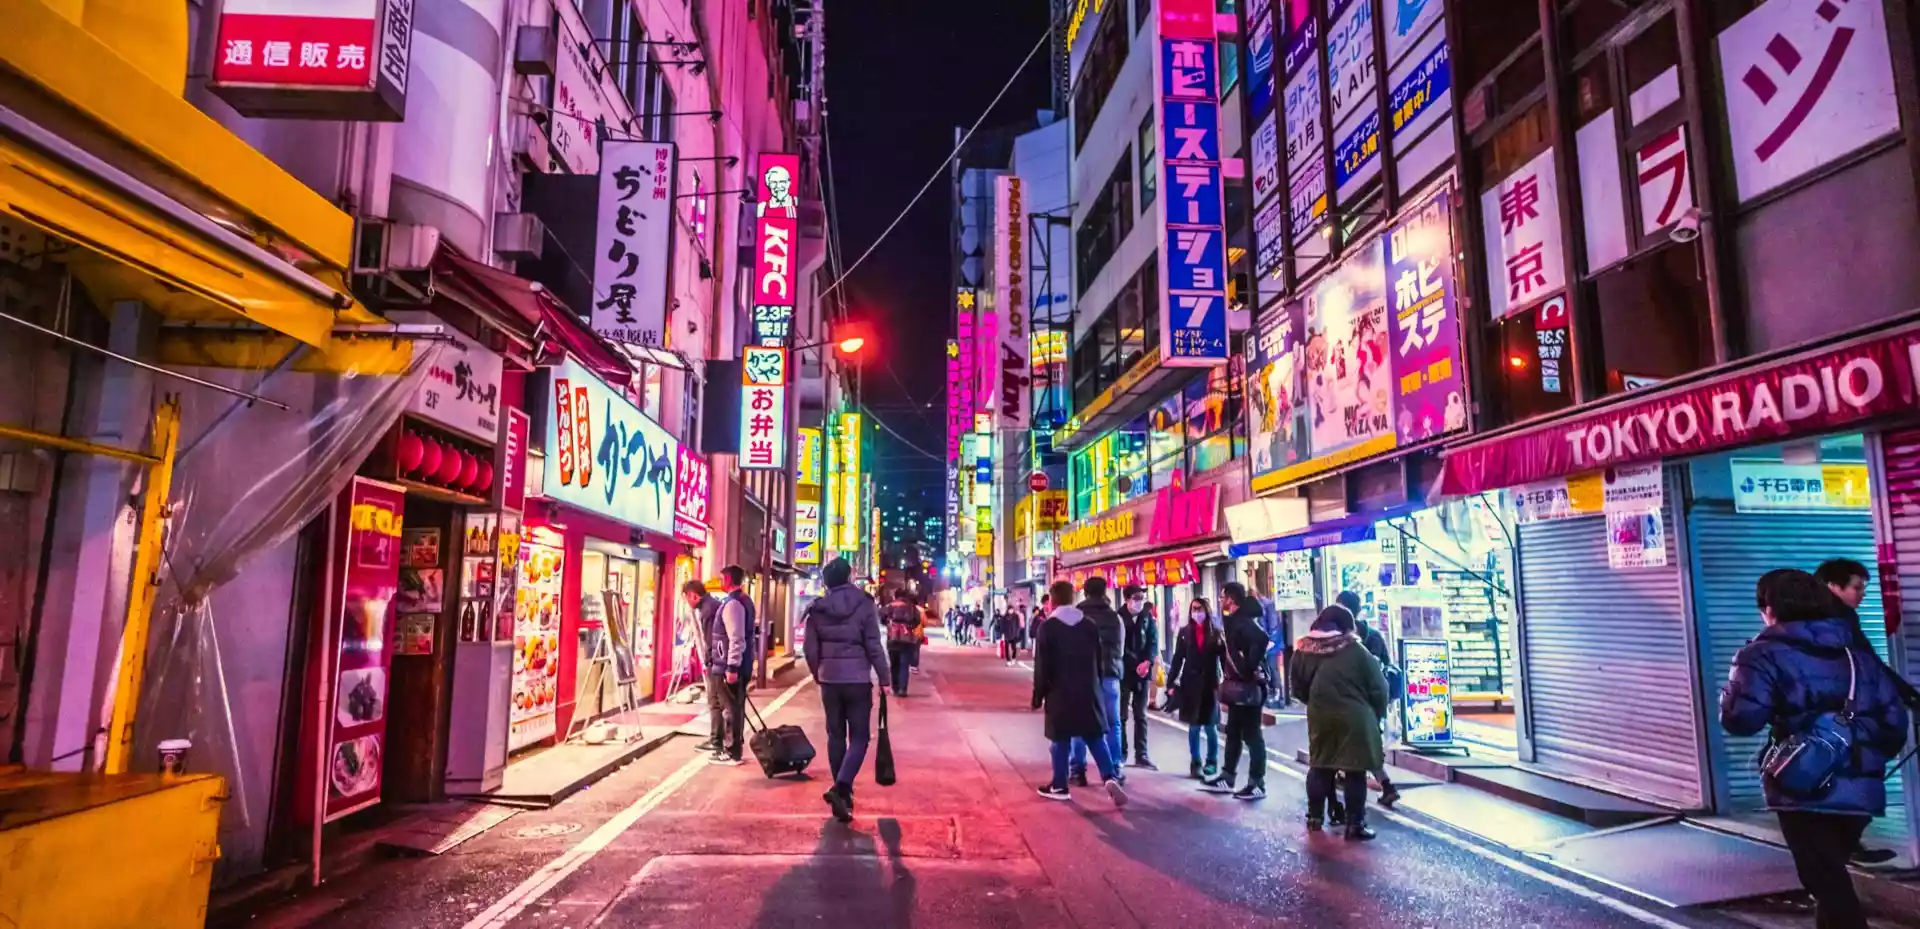 En travel gågate i Tokyo, fylt med mennesker som går forbi under det blendende skjæret av neonlysene som lyser opp den moderne arkitekturen rundt dem.